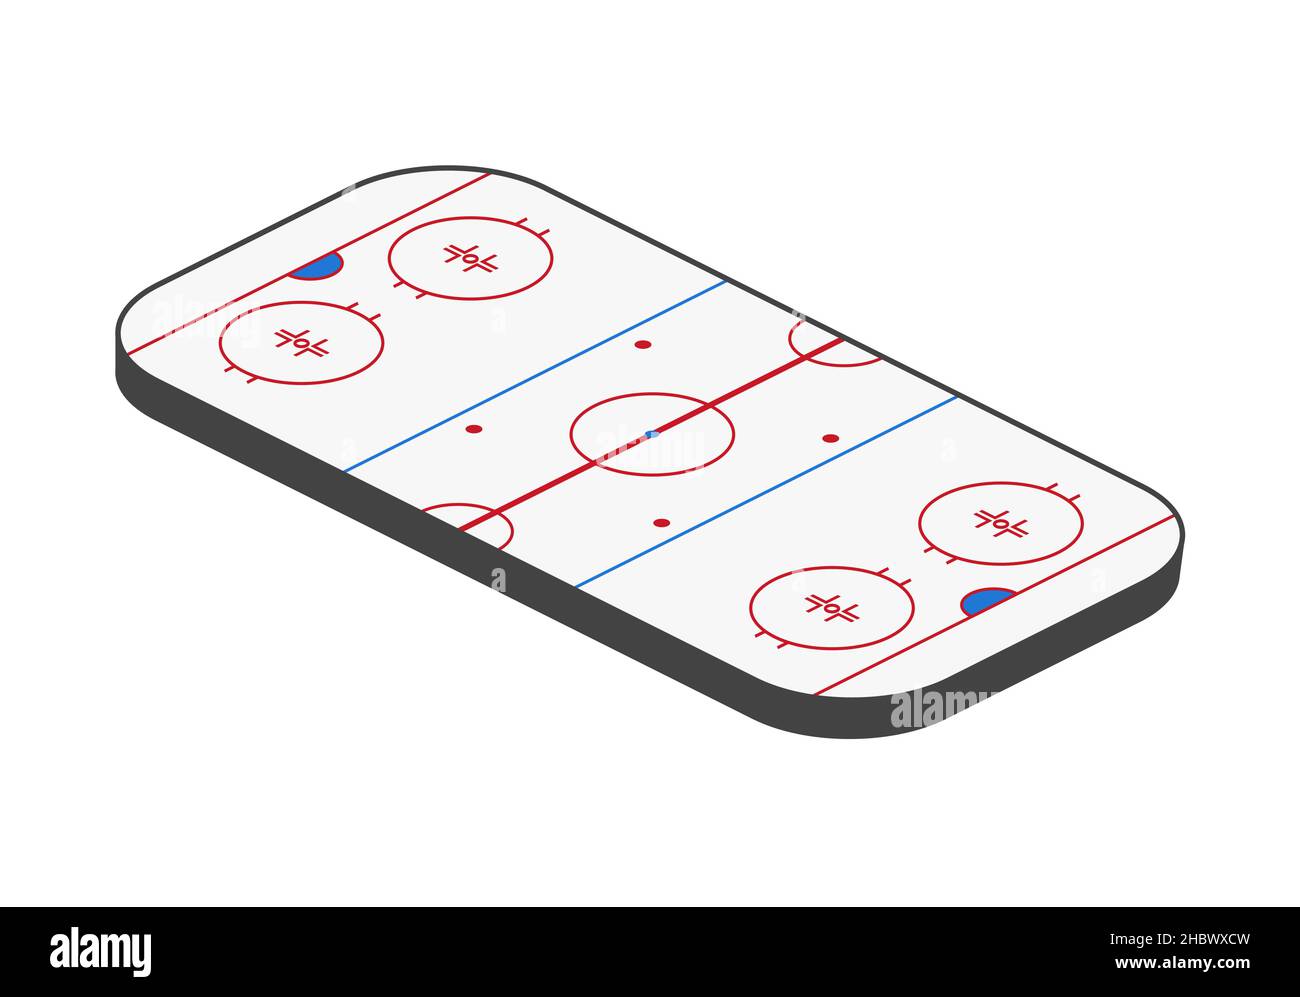 Patinoire de hockey sur glace.Arène isométrique avec rayures.Illustration vectorielle Illustration de Vecteur